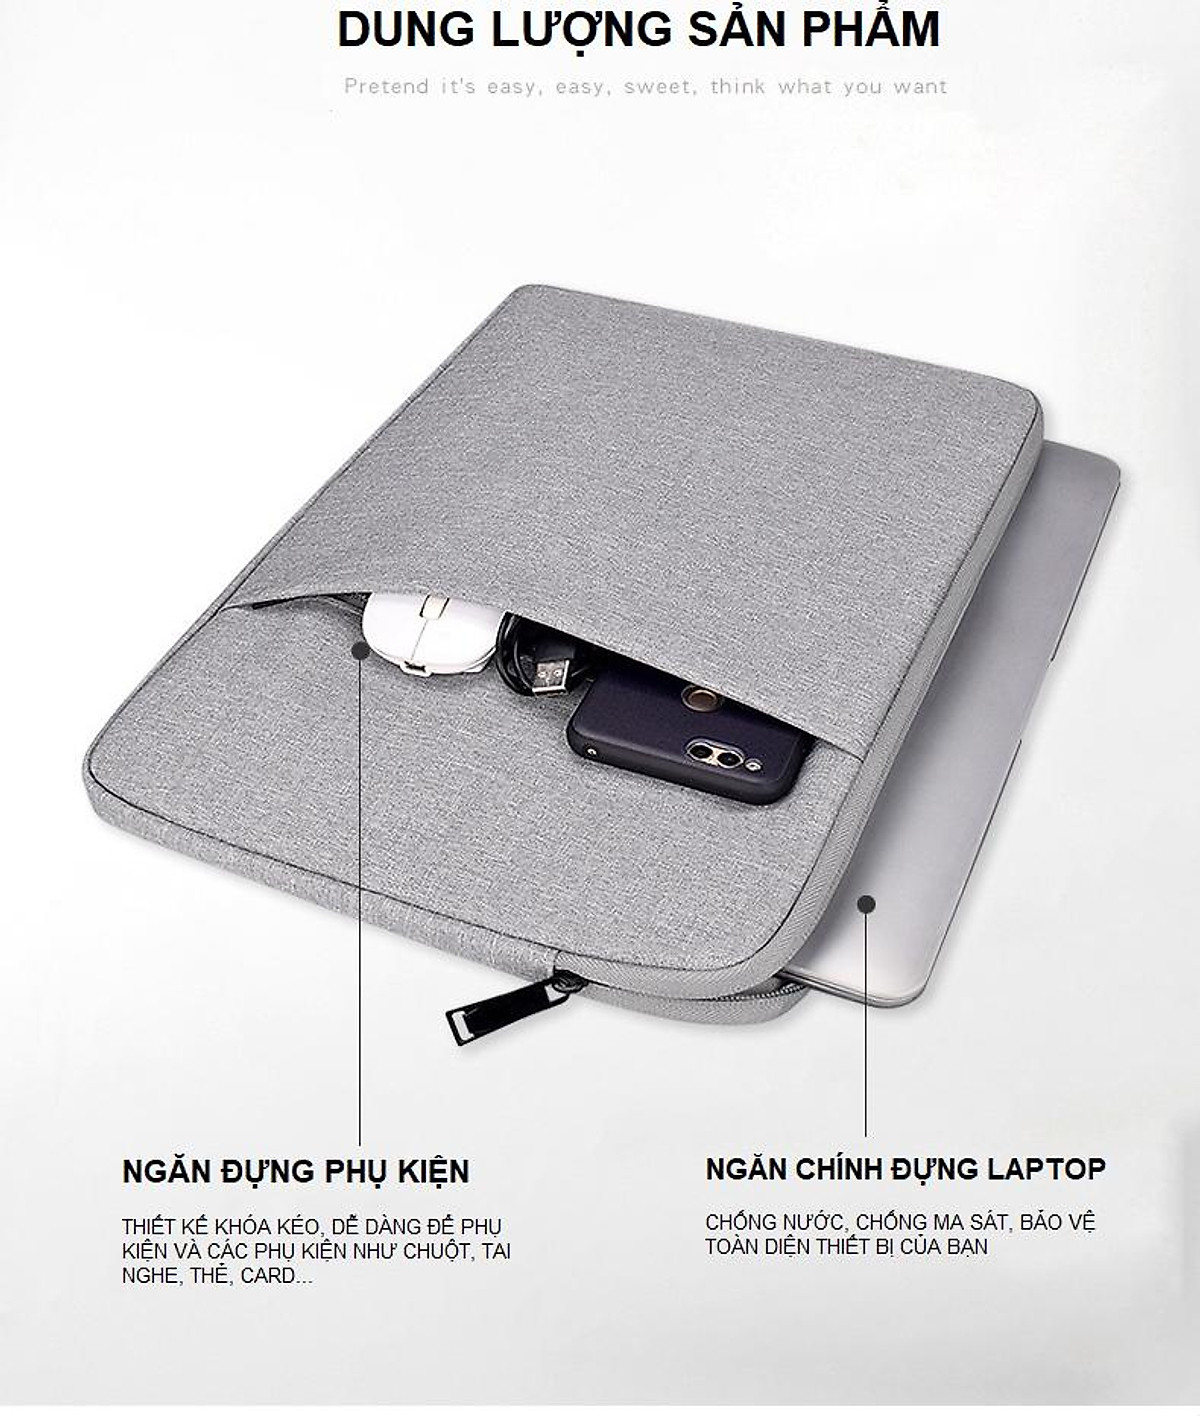 Mua Ngay Túi Chống Sốc Laptop Macbook 13.3 inch Chống Nước, Chống Va Đập, Ma Sát (Màu Xám) Cực Chất